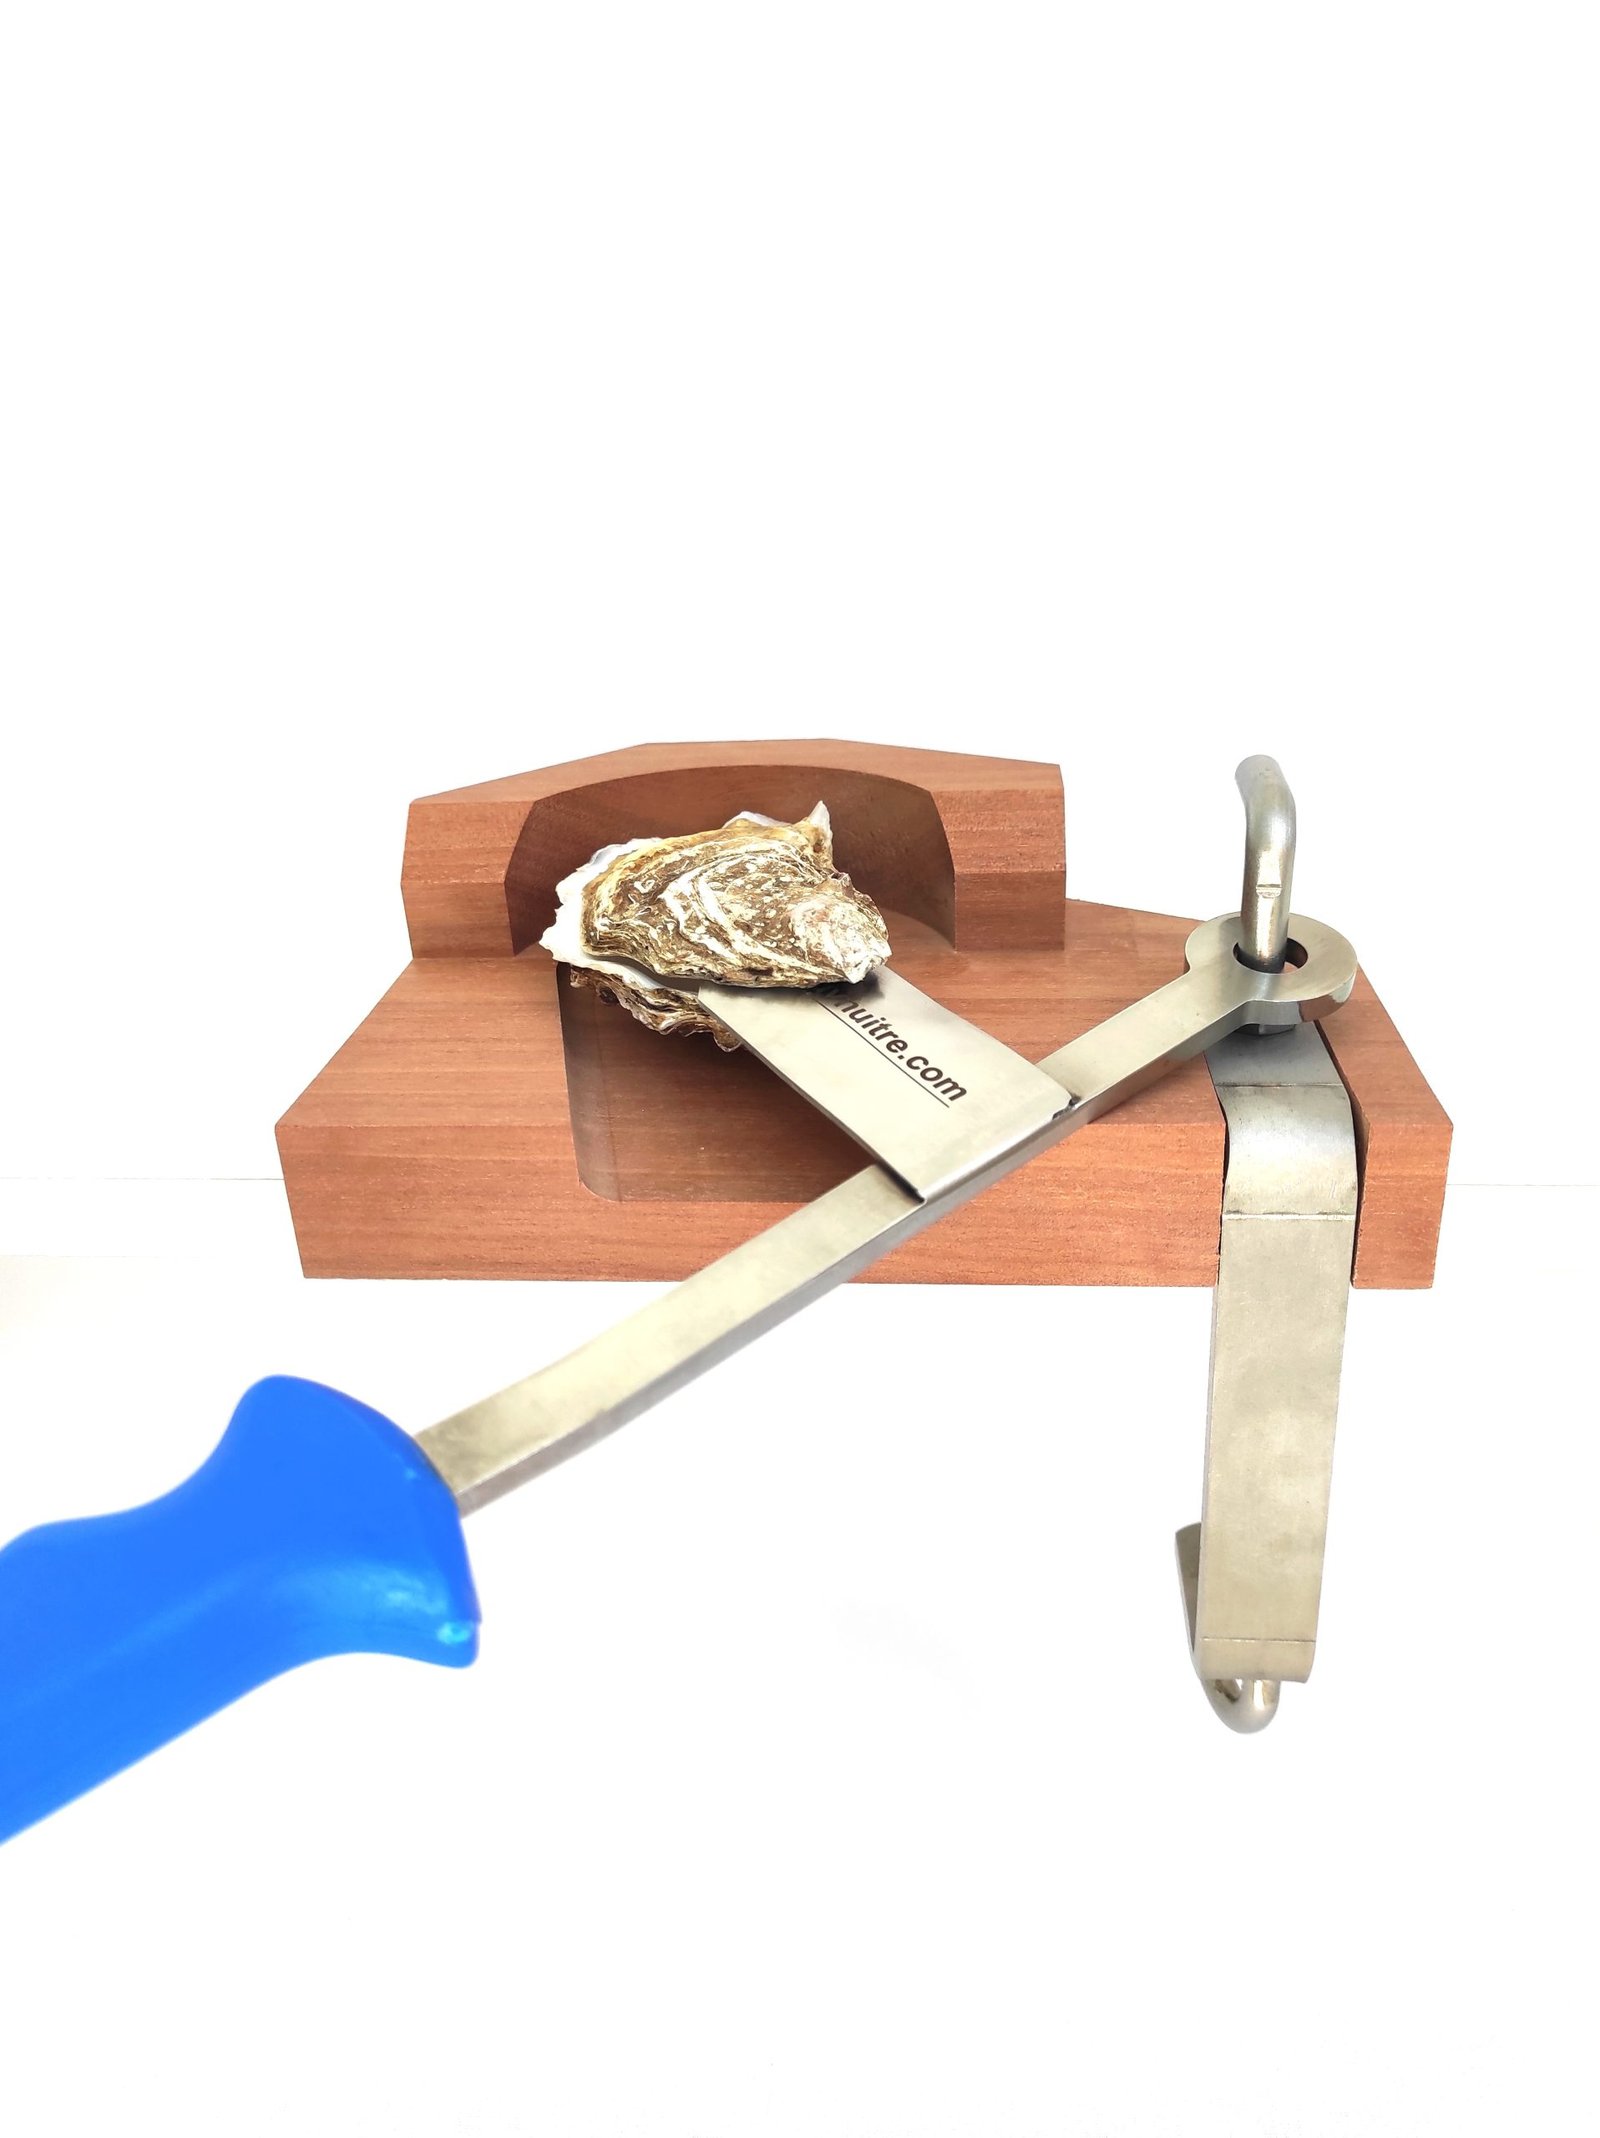 Acheter Ouvre-huîtres acier inoxydable bois 3518079 auprès de Koswa?